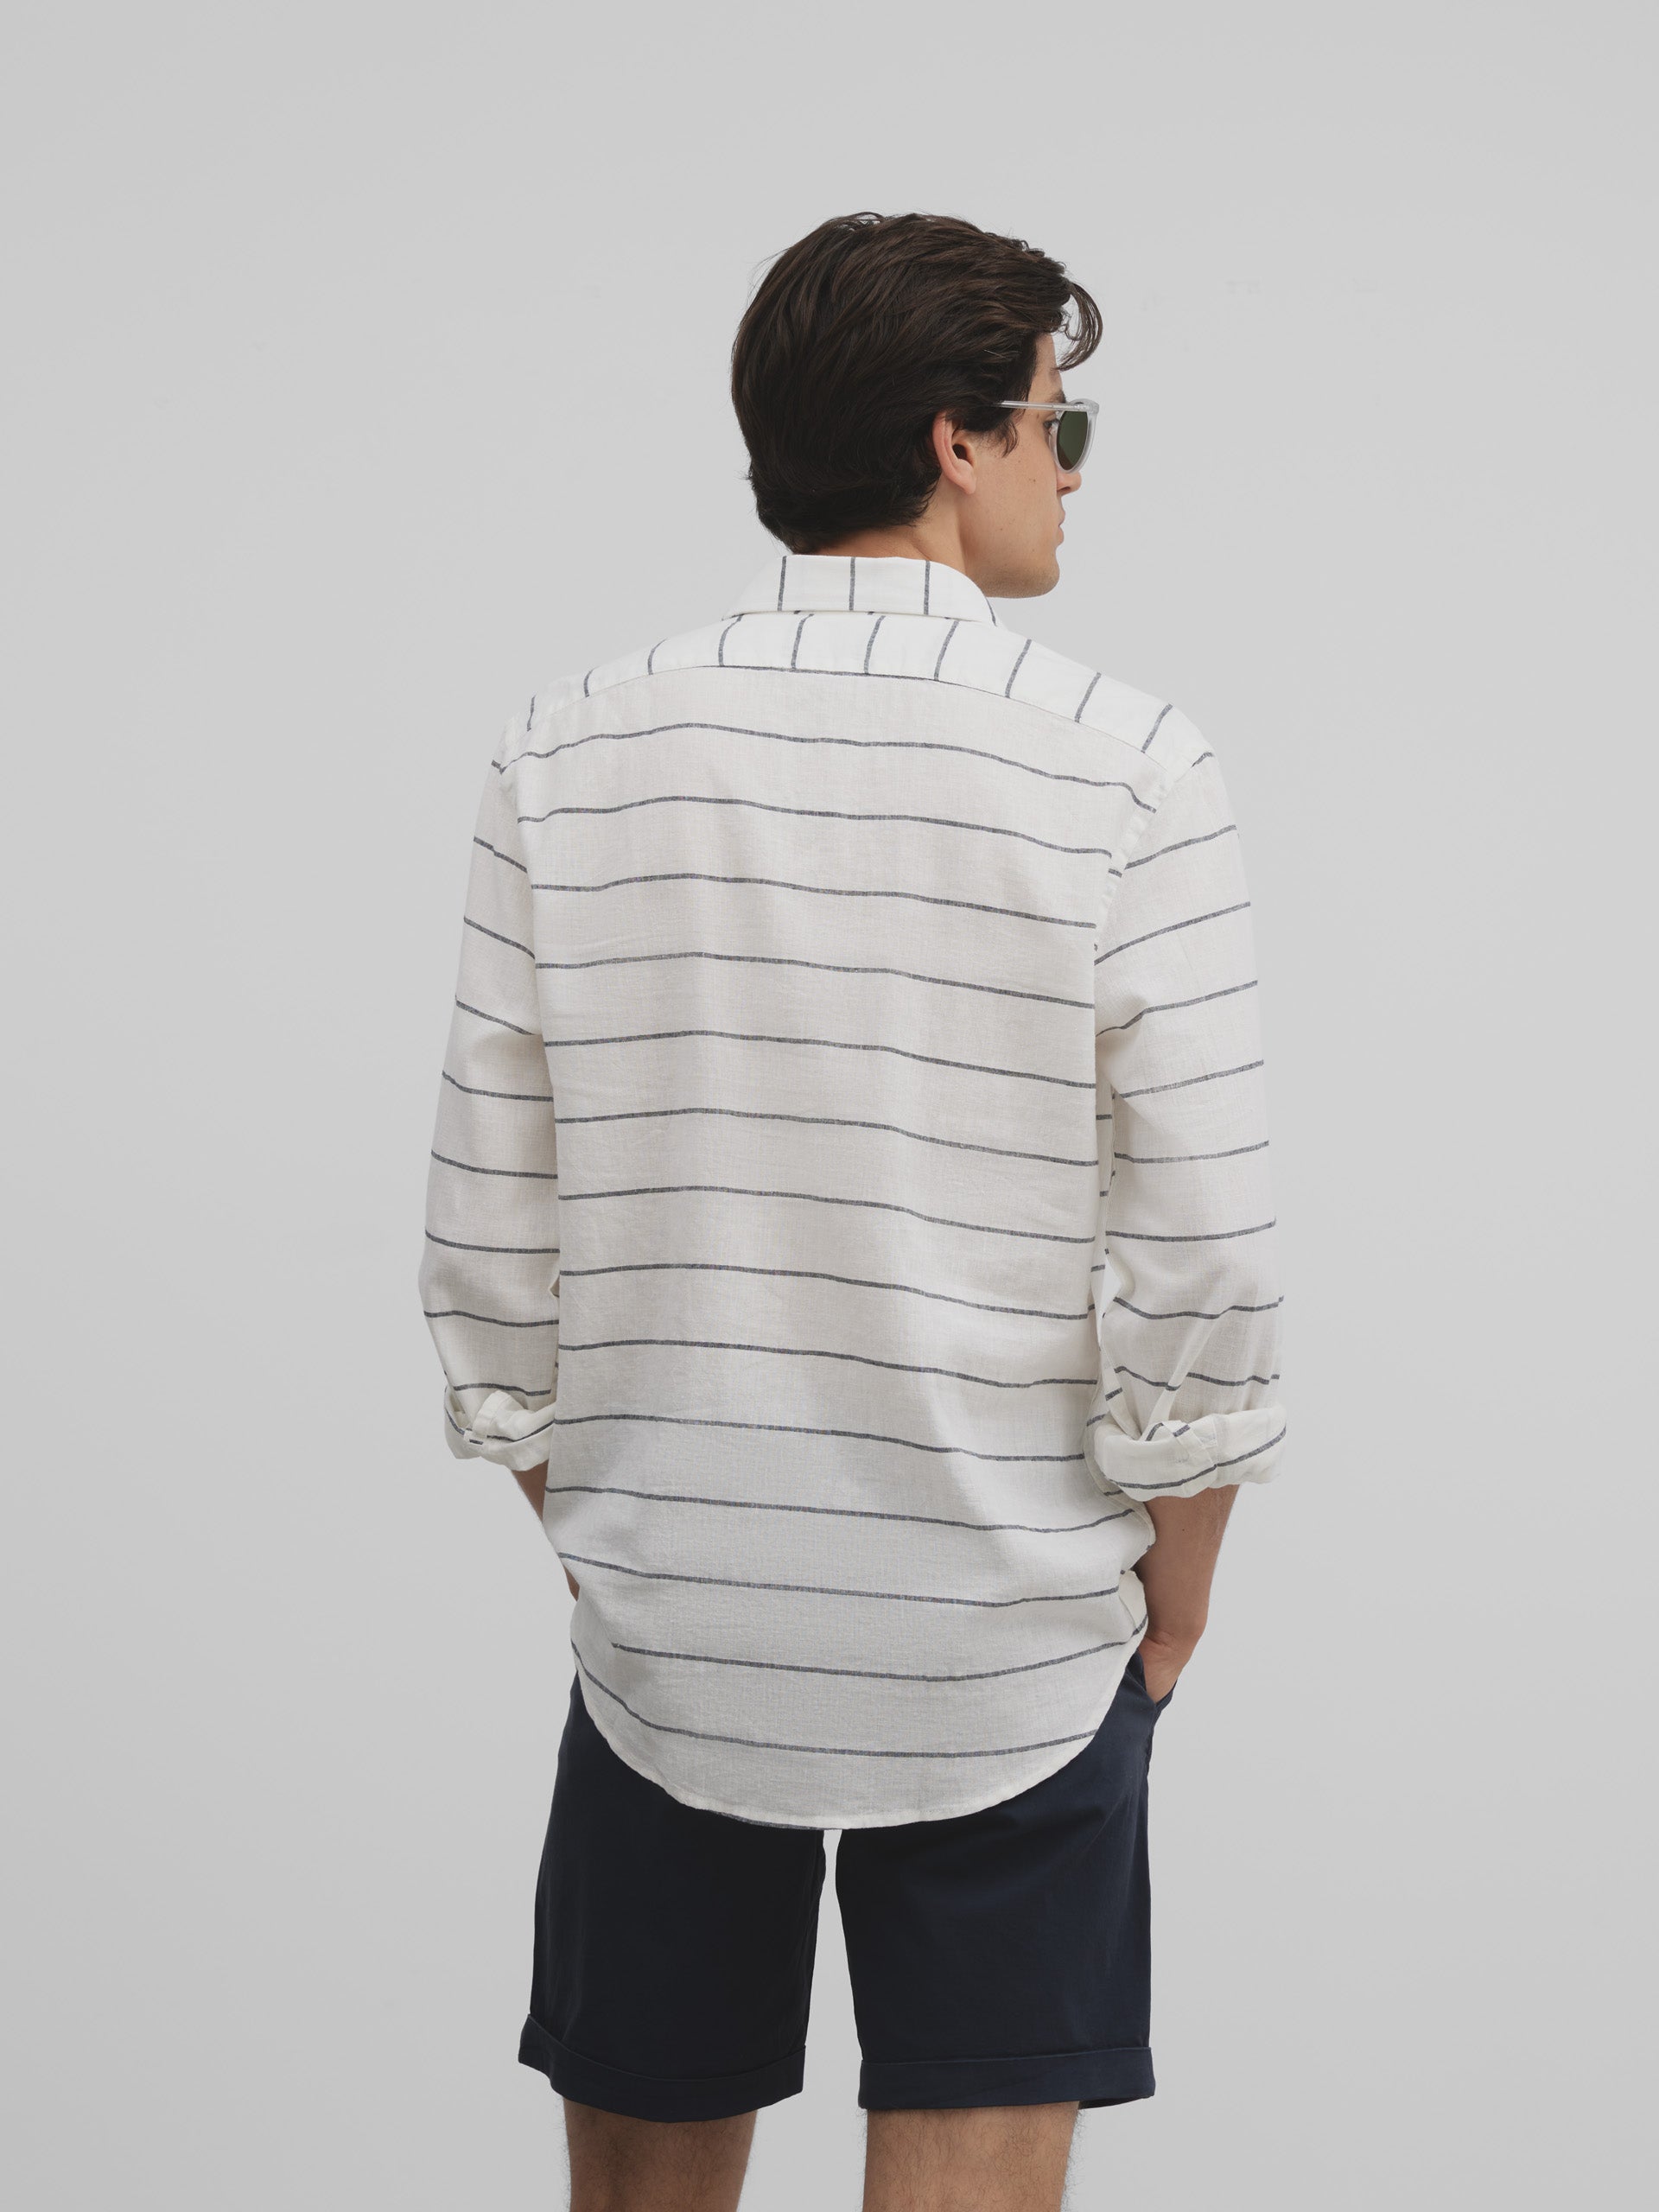 Silbon soft wide white gray stripe sports t-shirt